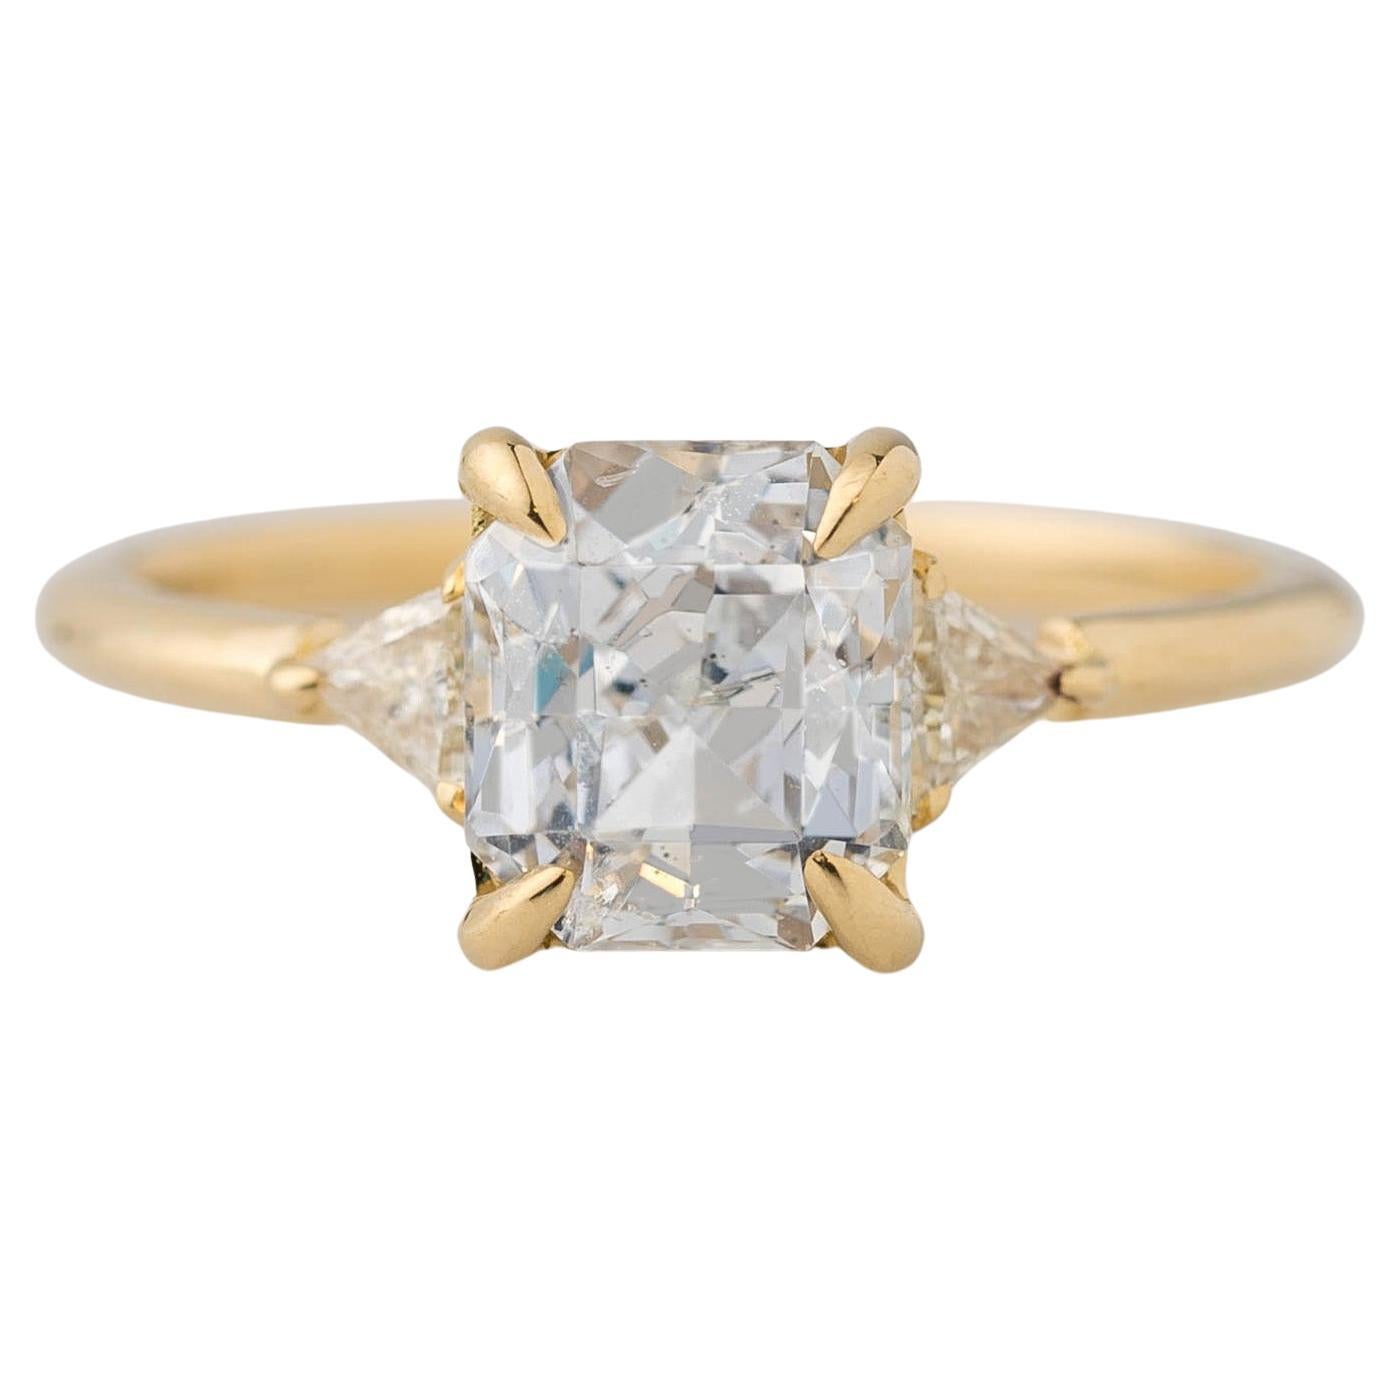 Verlobungsring mit GIA-zertifiziertem 2,22 Karat weißem Saphir und 3-Stein-Diamant